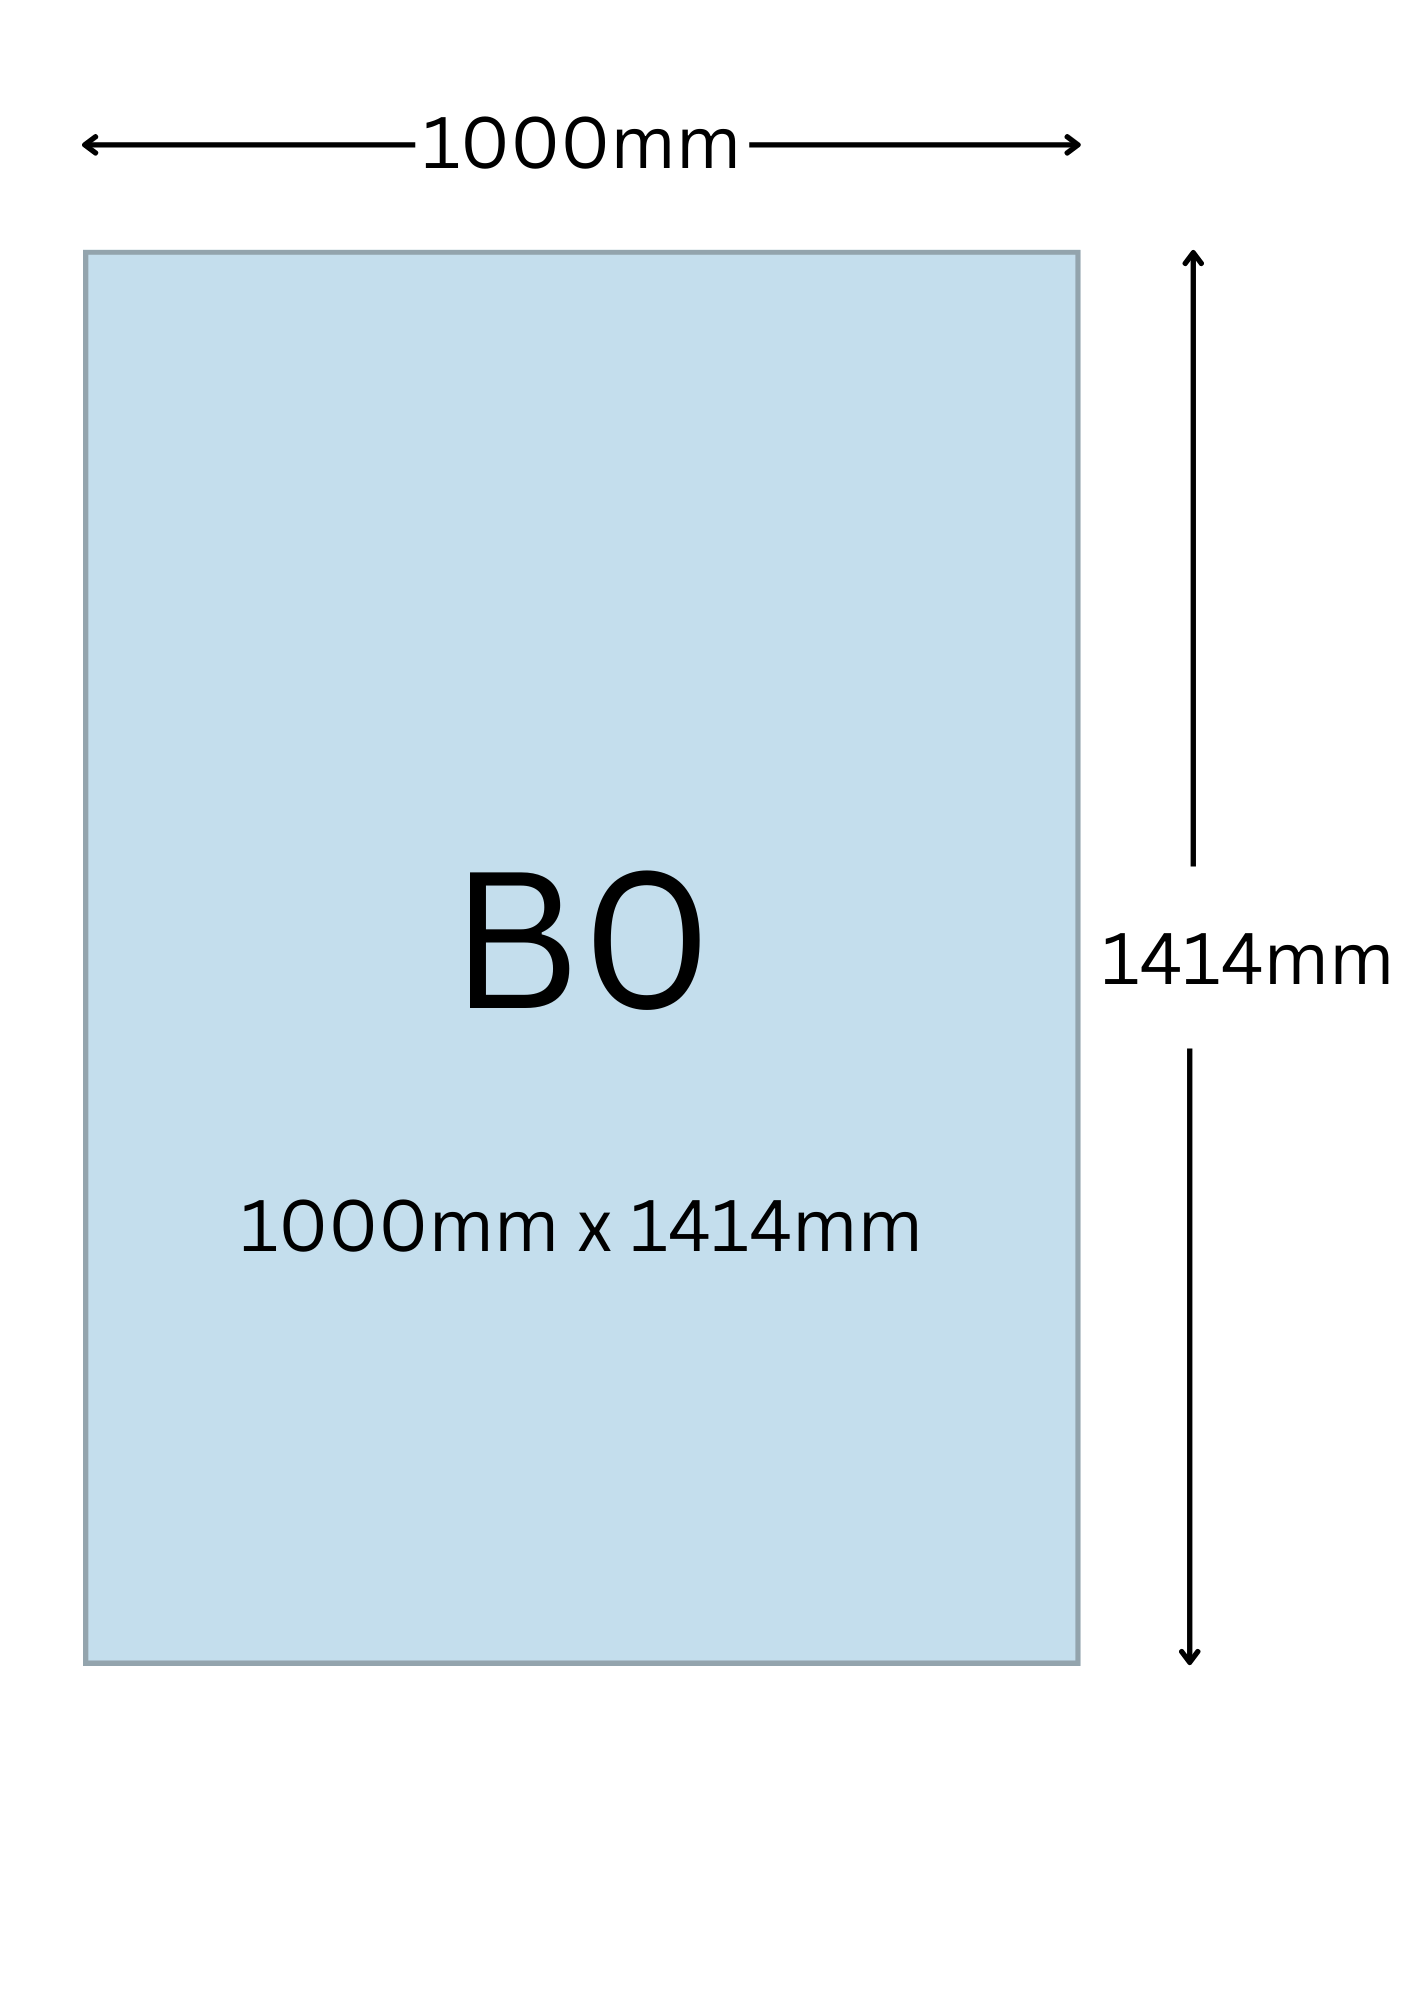 B0尺寸公分, B0紙張尺寸大小, B0紙張對應開數是幾開